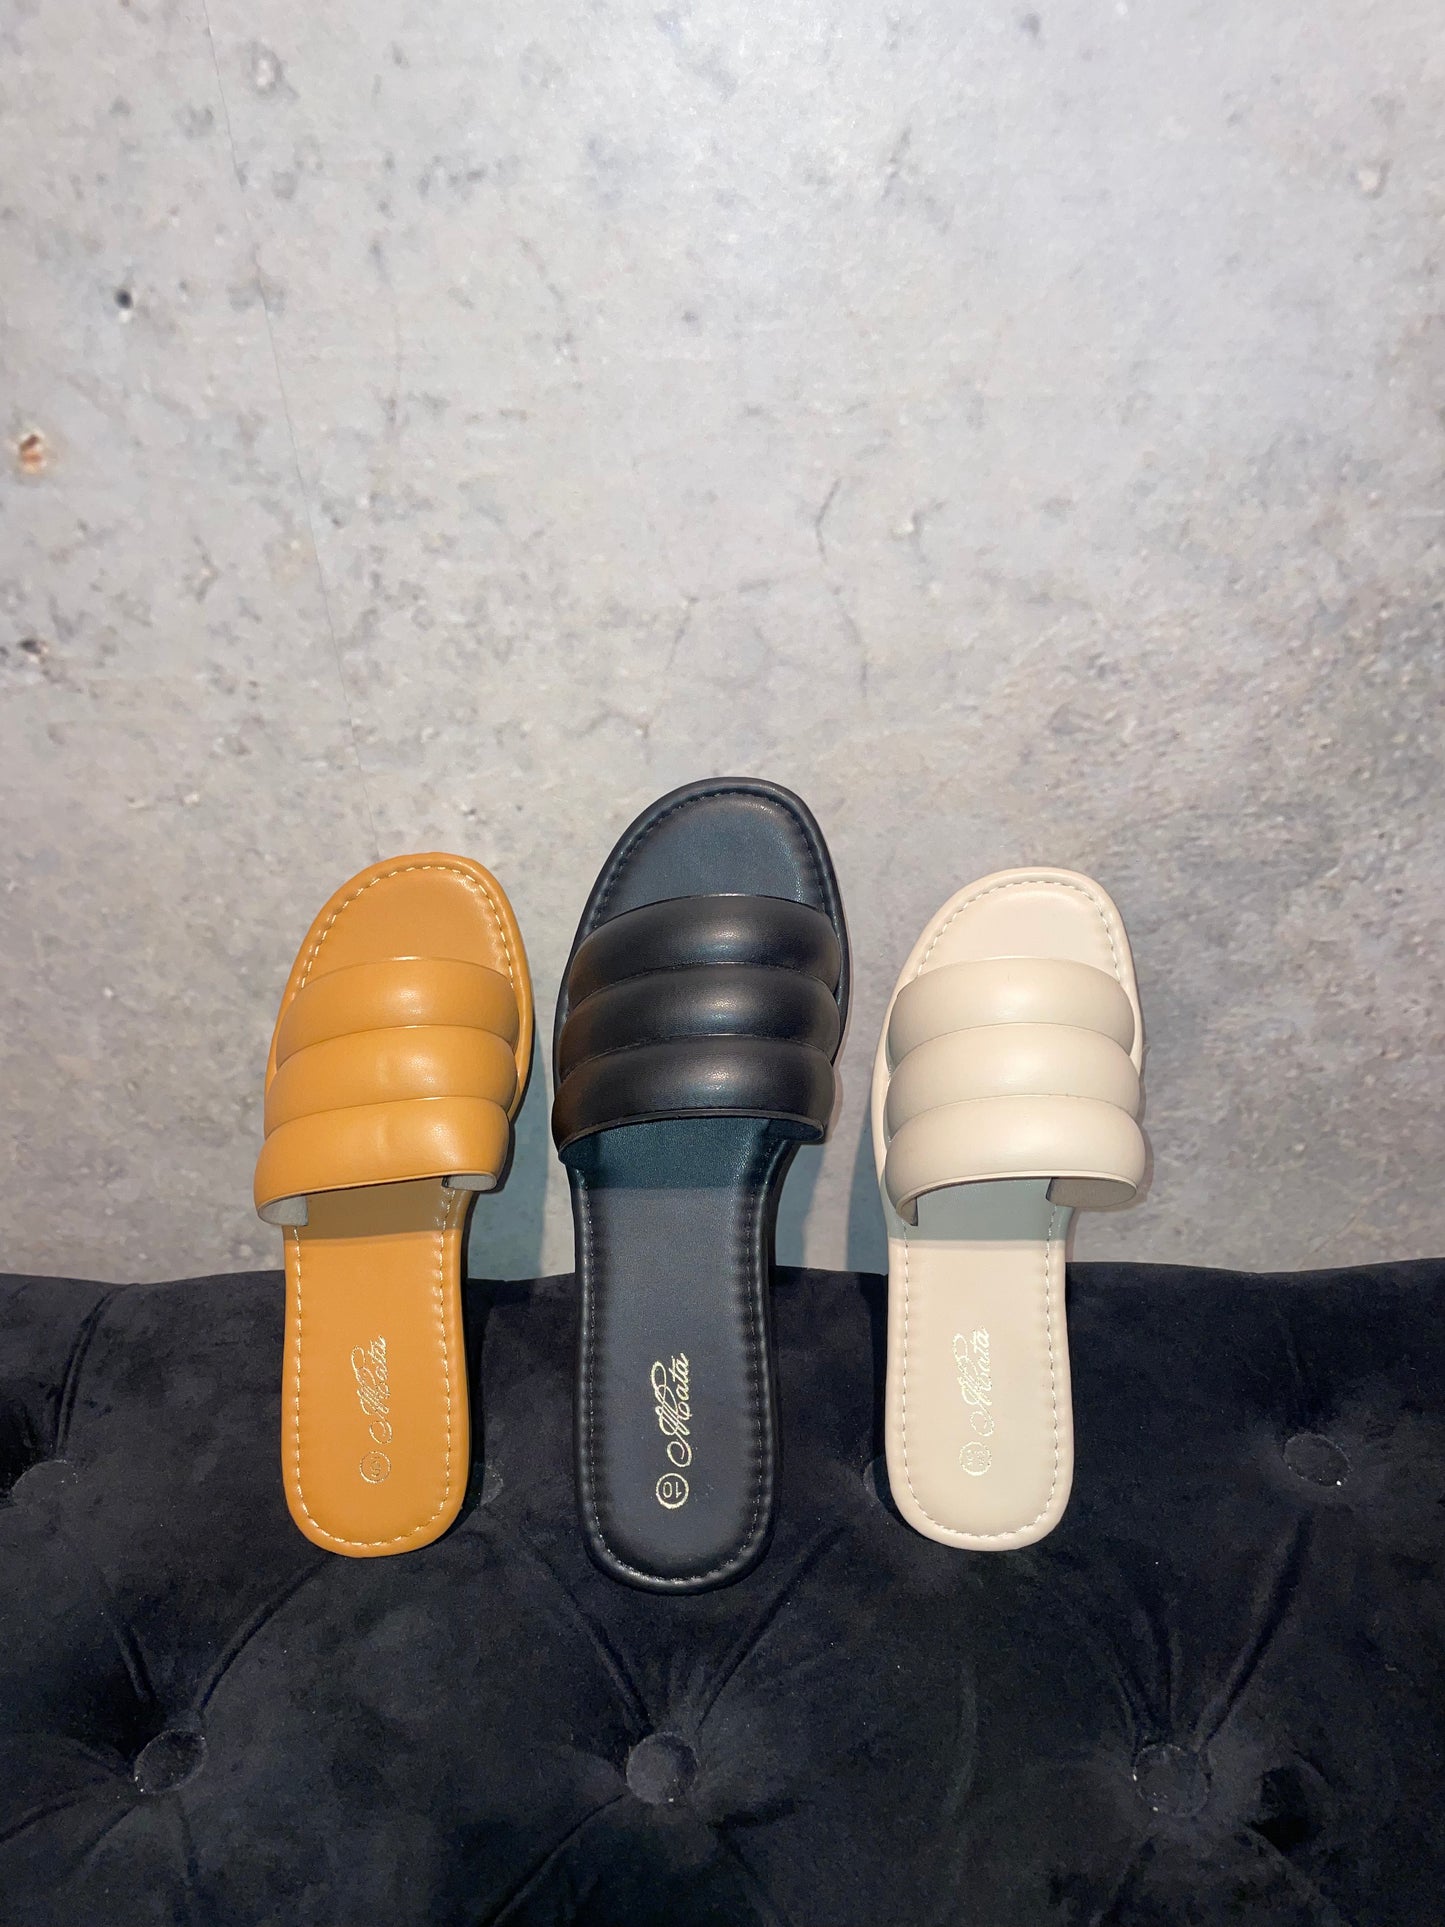 BOHO: Flat sandals